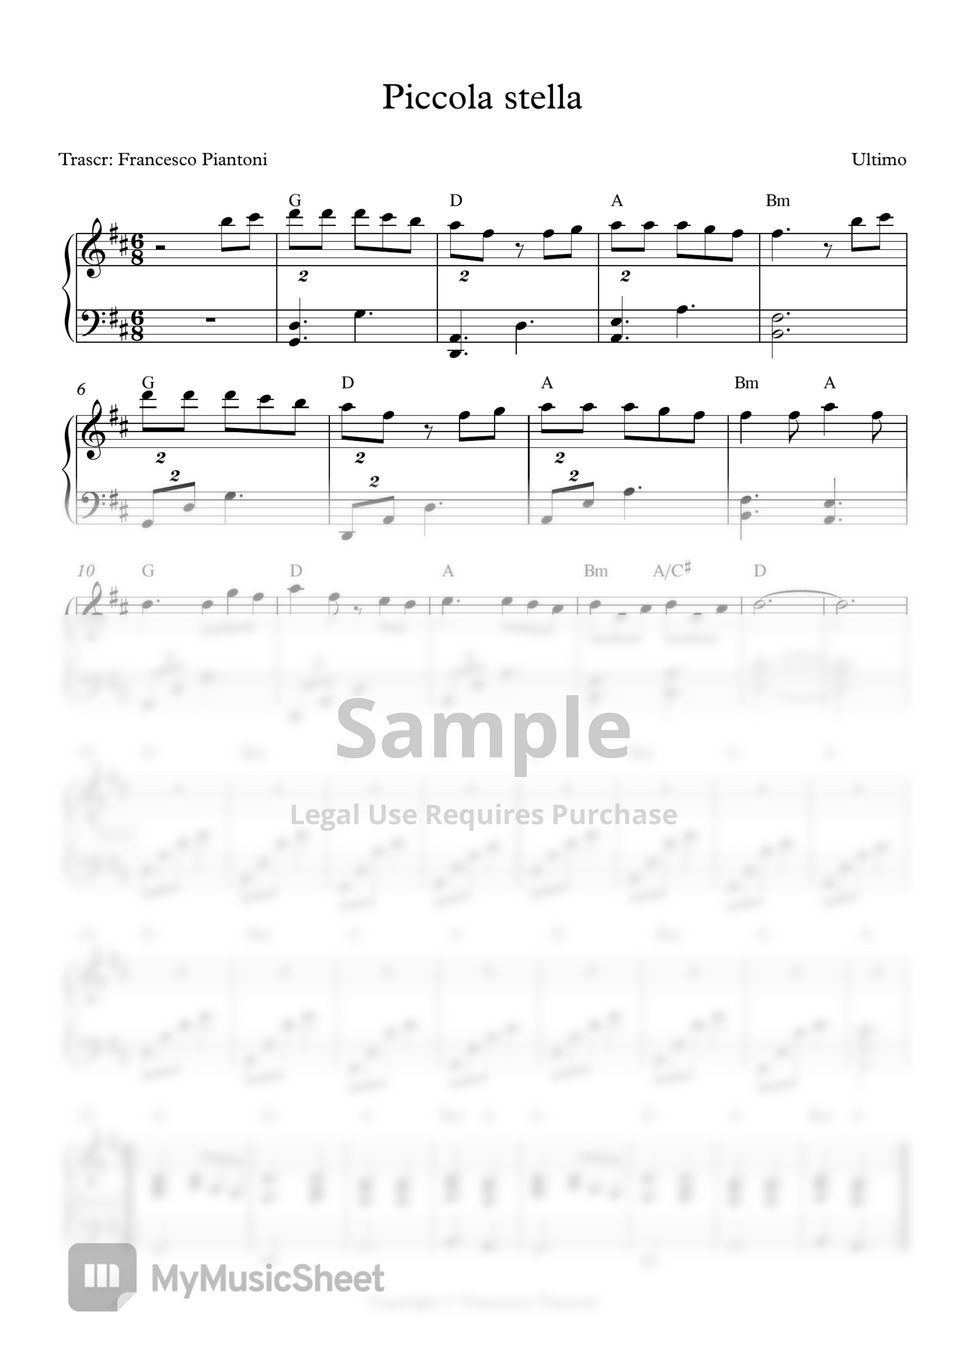 Ultimo - Piccola stella (spartito pianoforte) Sheets by Francesco Piantoni